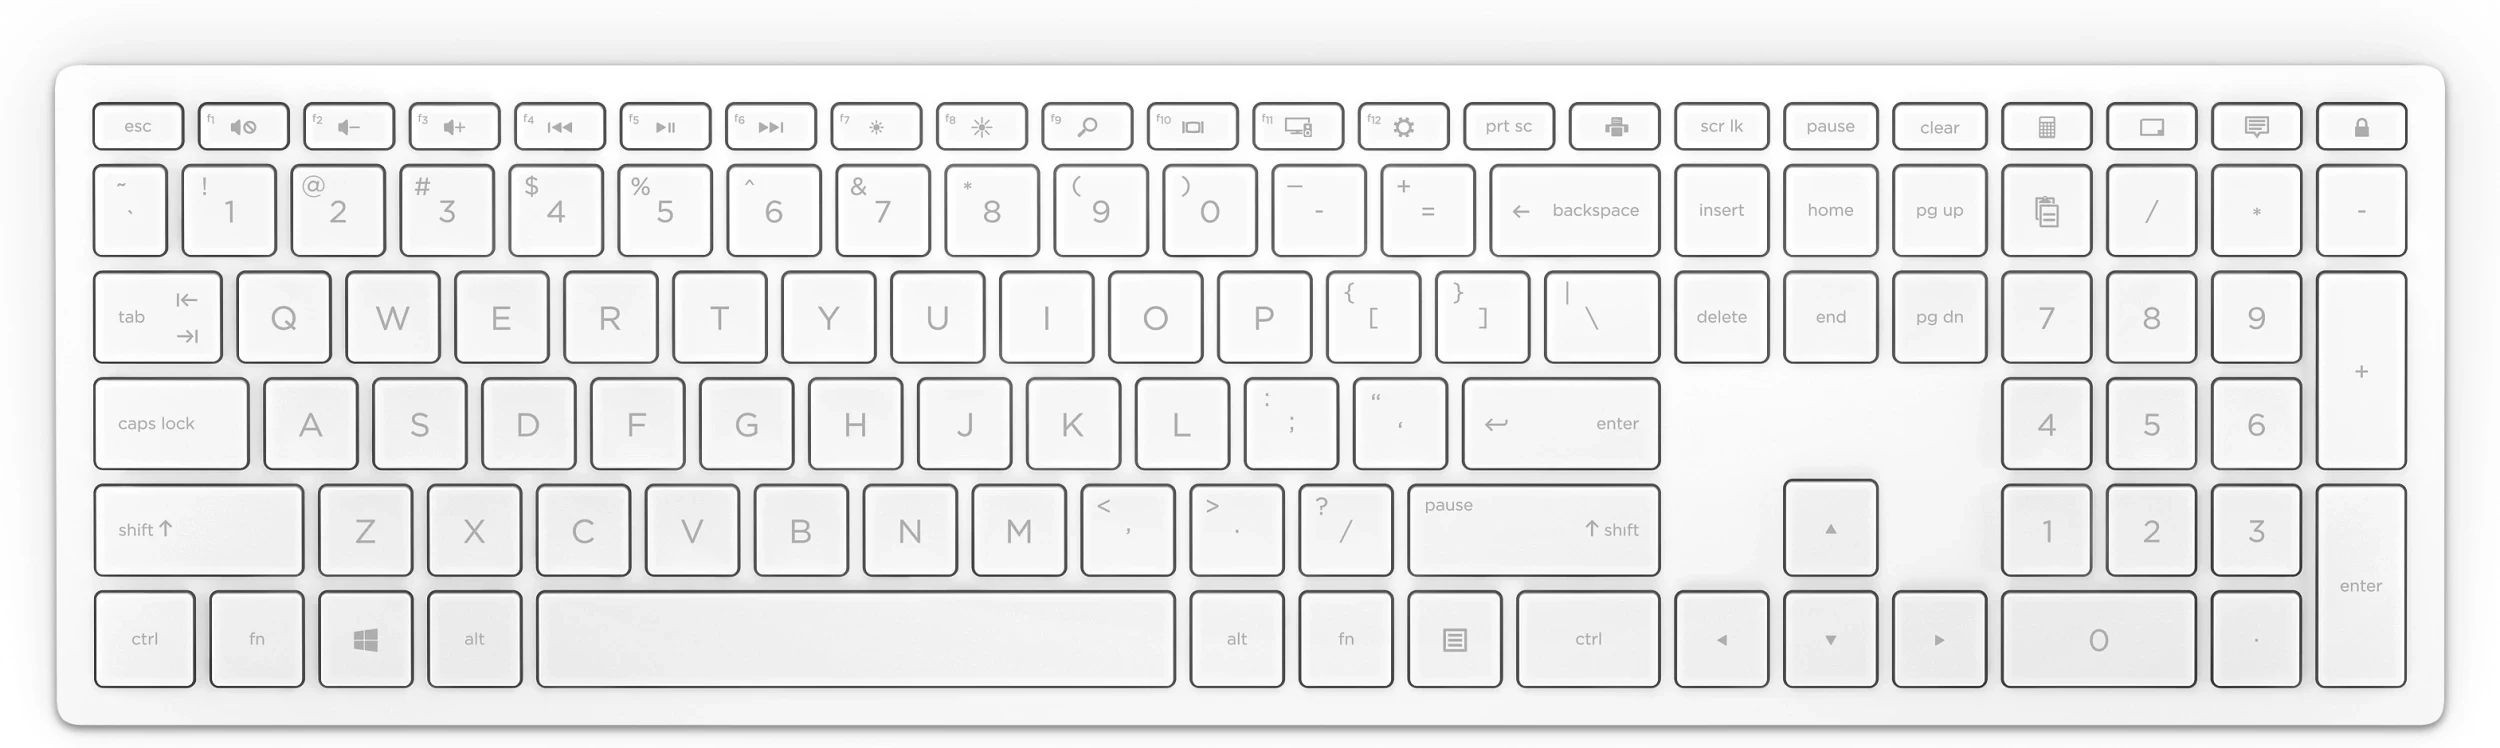 أتش بي Pavilion لوحة مفاتيح لاسلكي 600 أبيض - (4CF02AA)